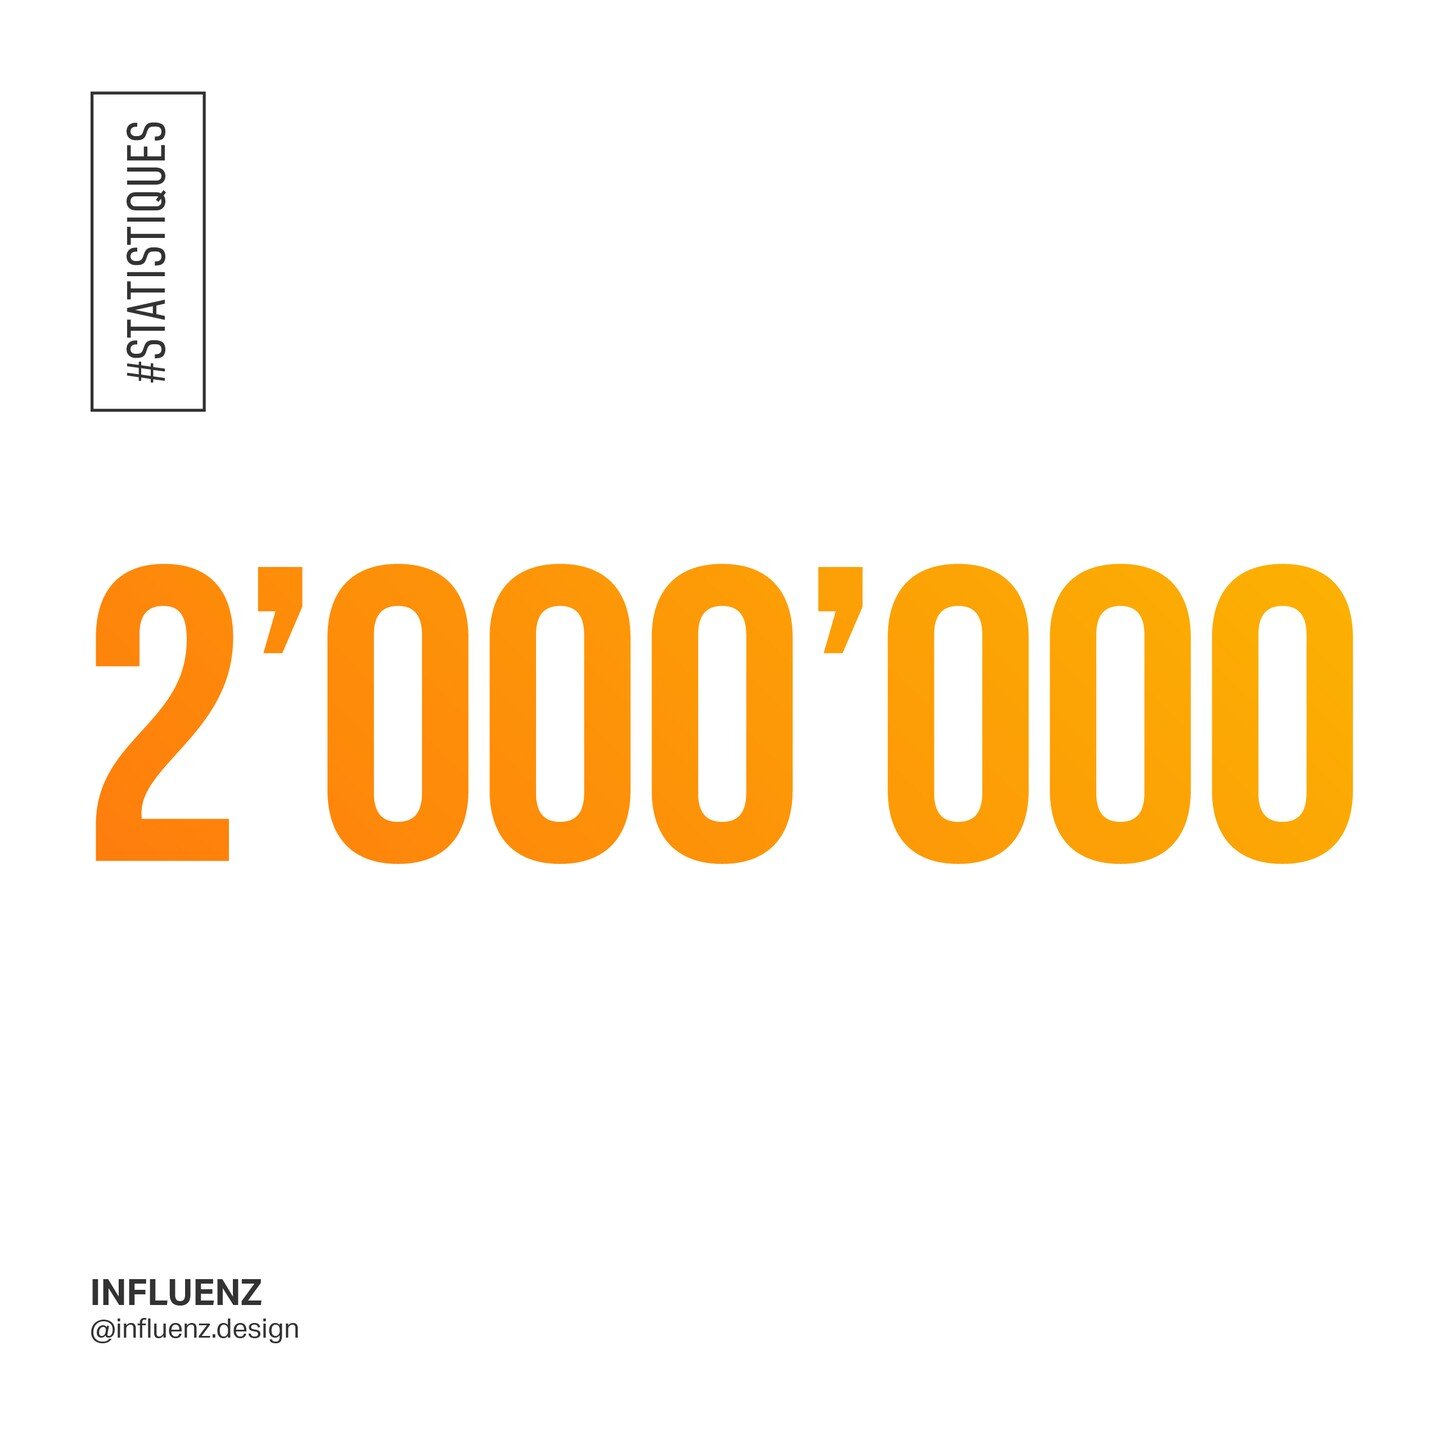 [statistiques]

Oui, deux millions! Pour lancer cette nouvelle s&eacute;rie consacr&eacute;e aux chiffres et statistiques d'Influenz, il fallait frapper fort! 🙂

2'000'000, c'est le nombre de vues mensuelles(!) d'Influenz sur Pinterest! Un nouveau r